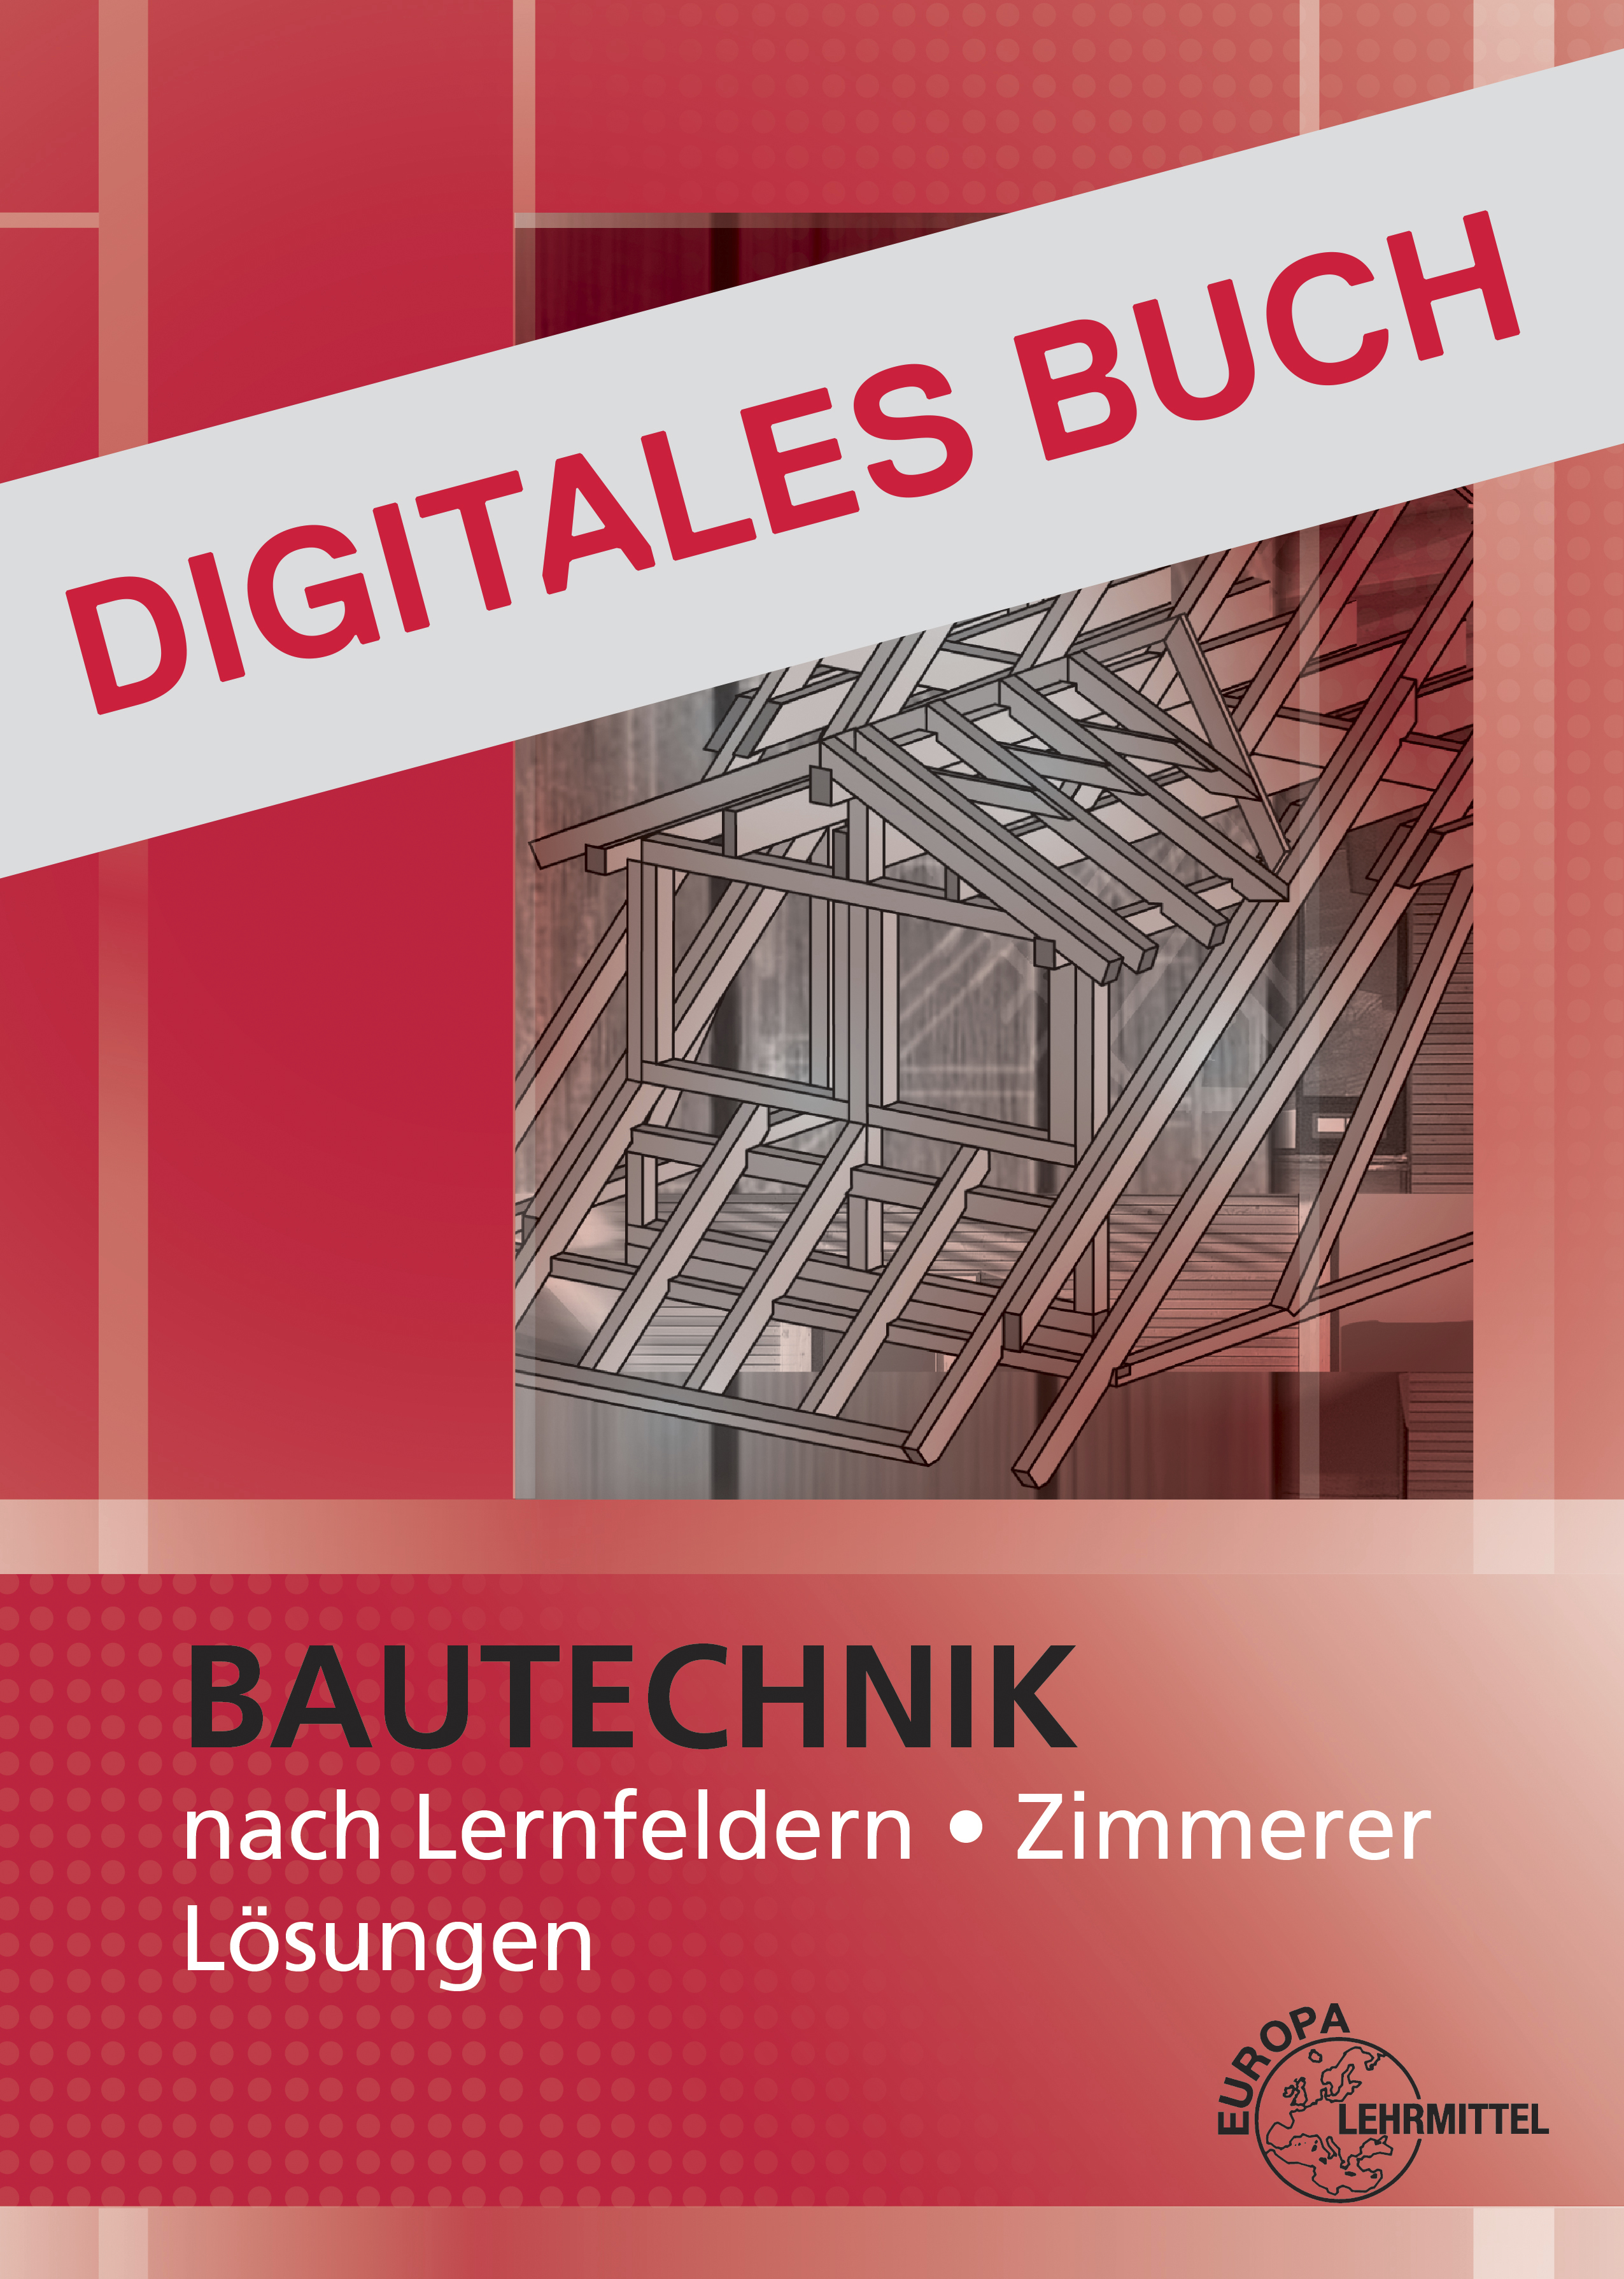 Lösungen Bautechnik nach Lernfeldern Zimmerer Digitales Buch